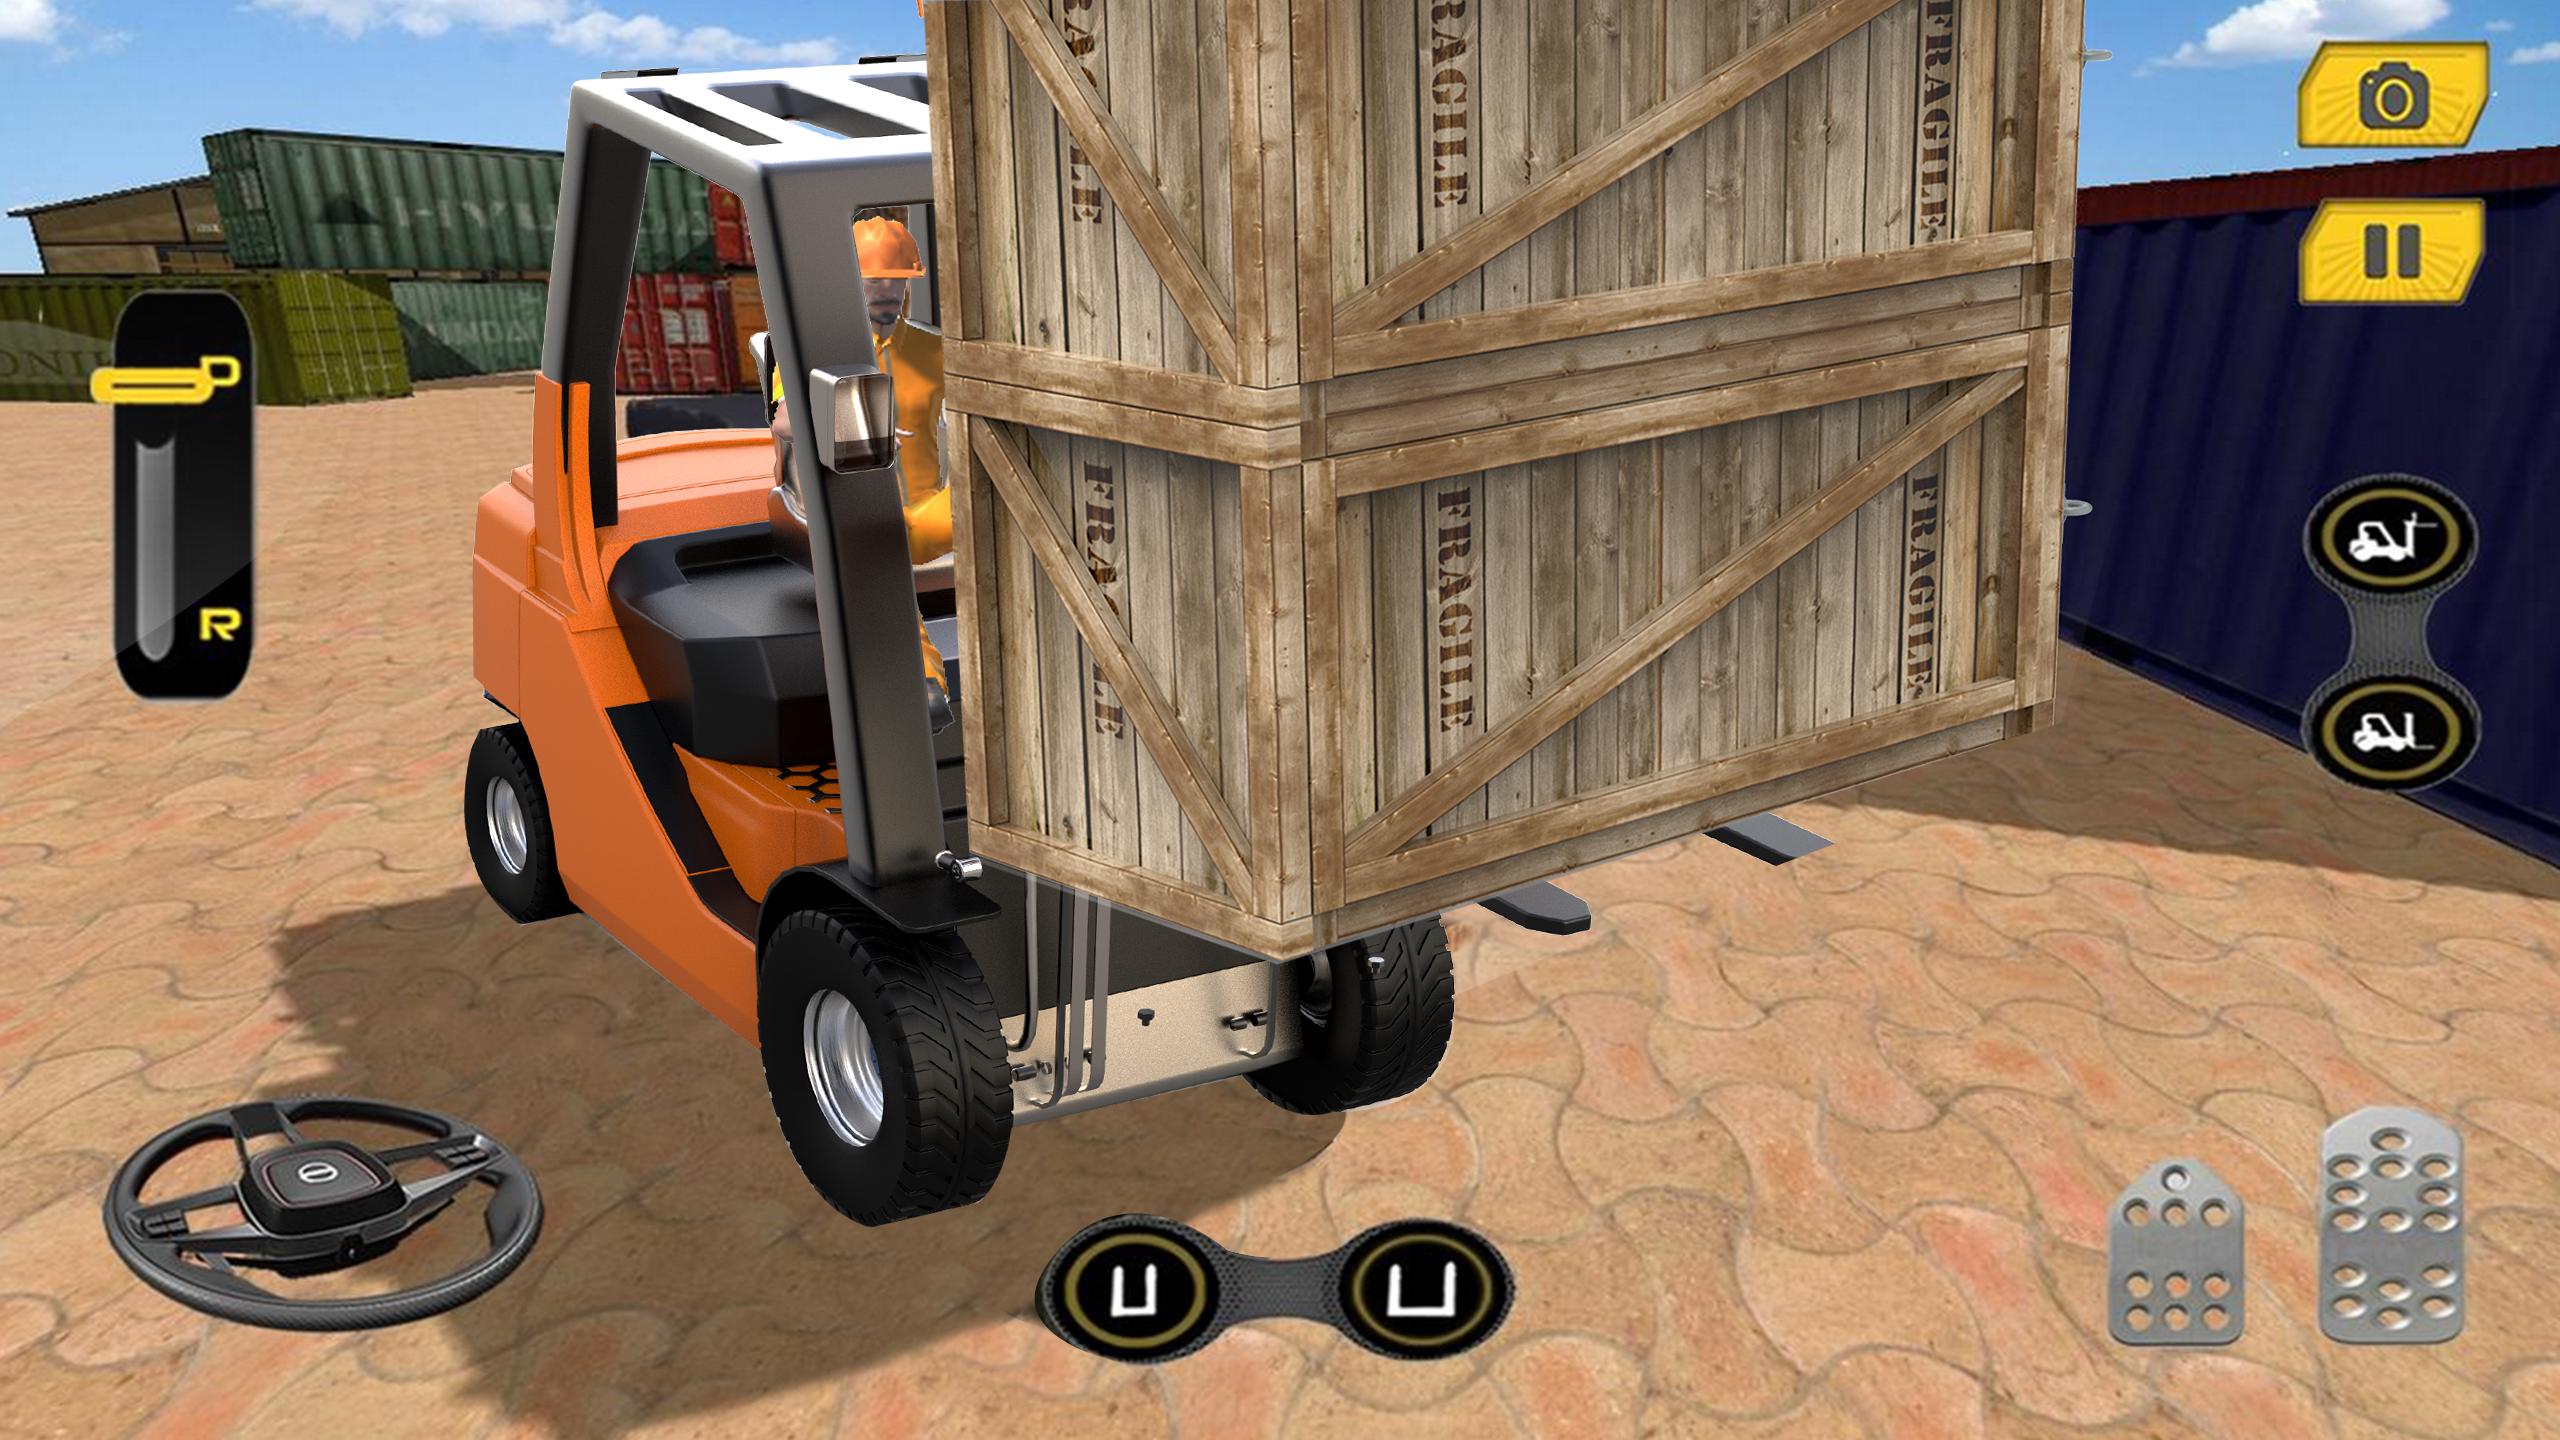 Real Forklift Simulator 2019: Cargo Forklift Games 3.1 Screenshot 11